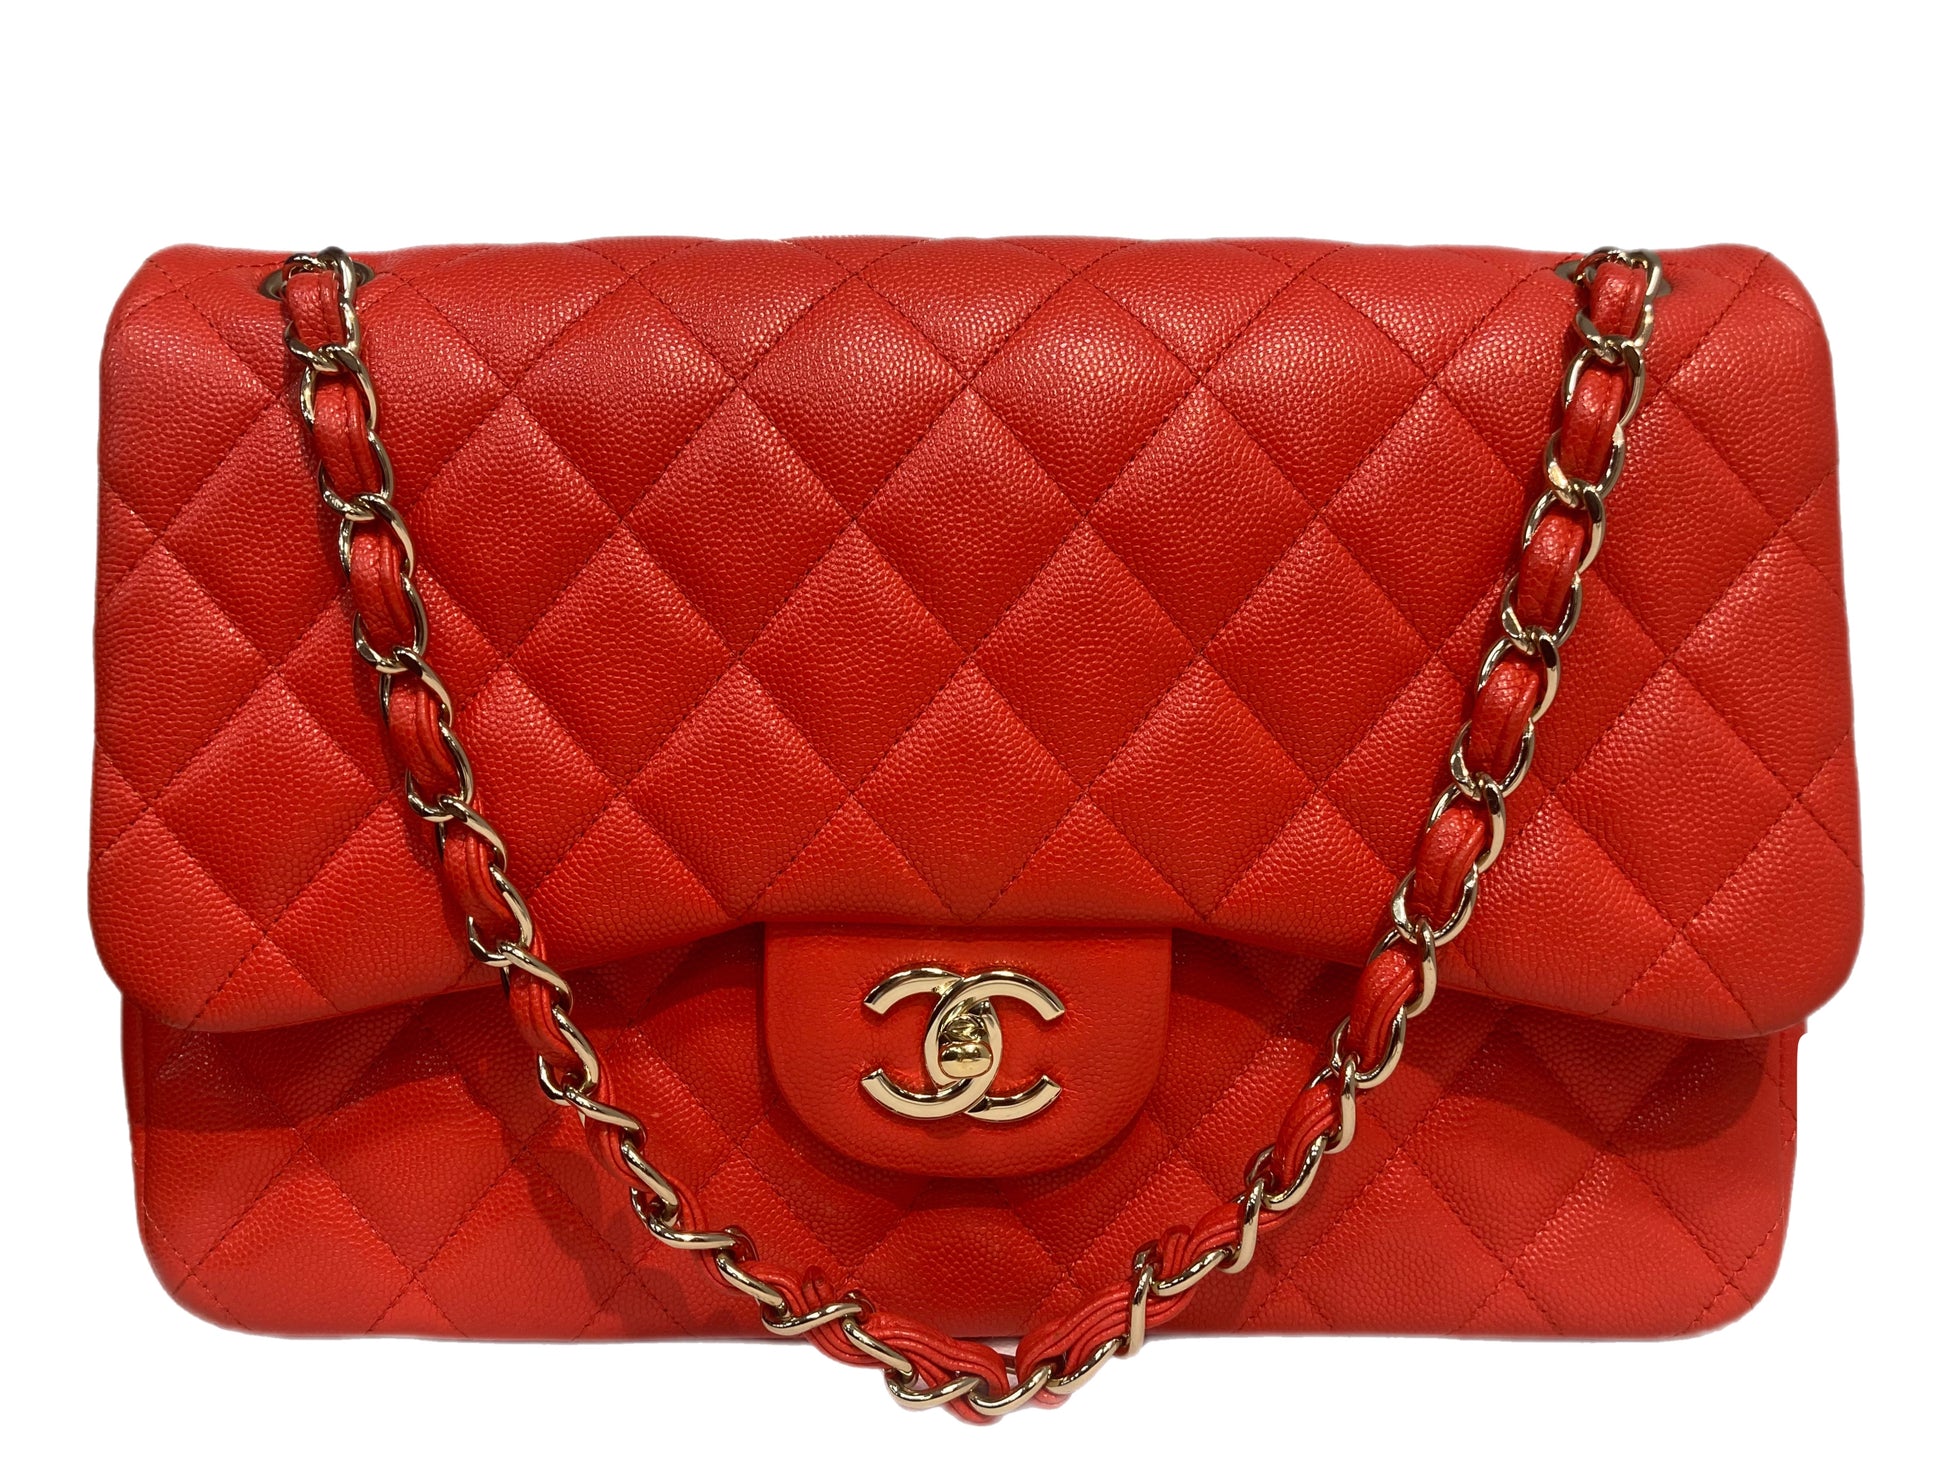 Chanel Jumbo Double Flap Handbag